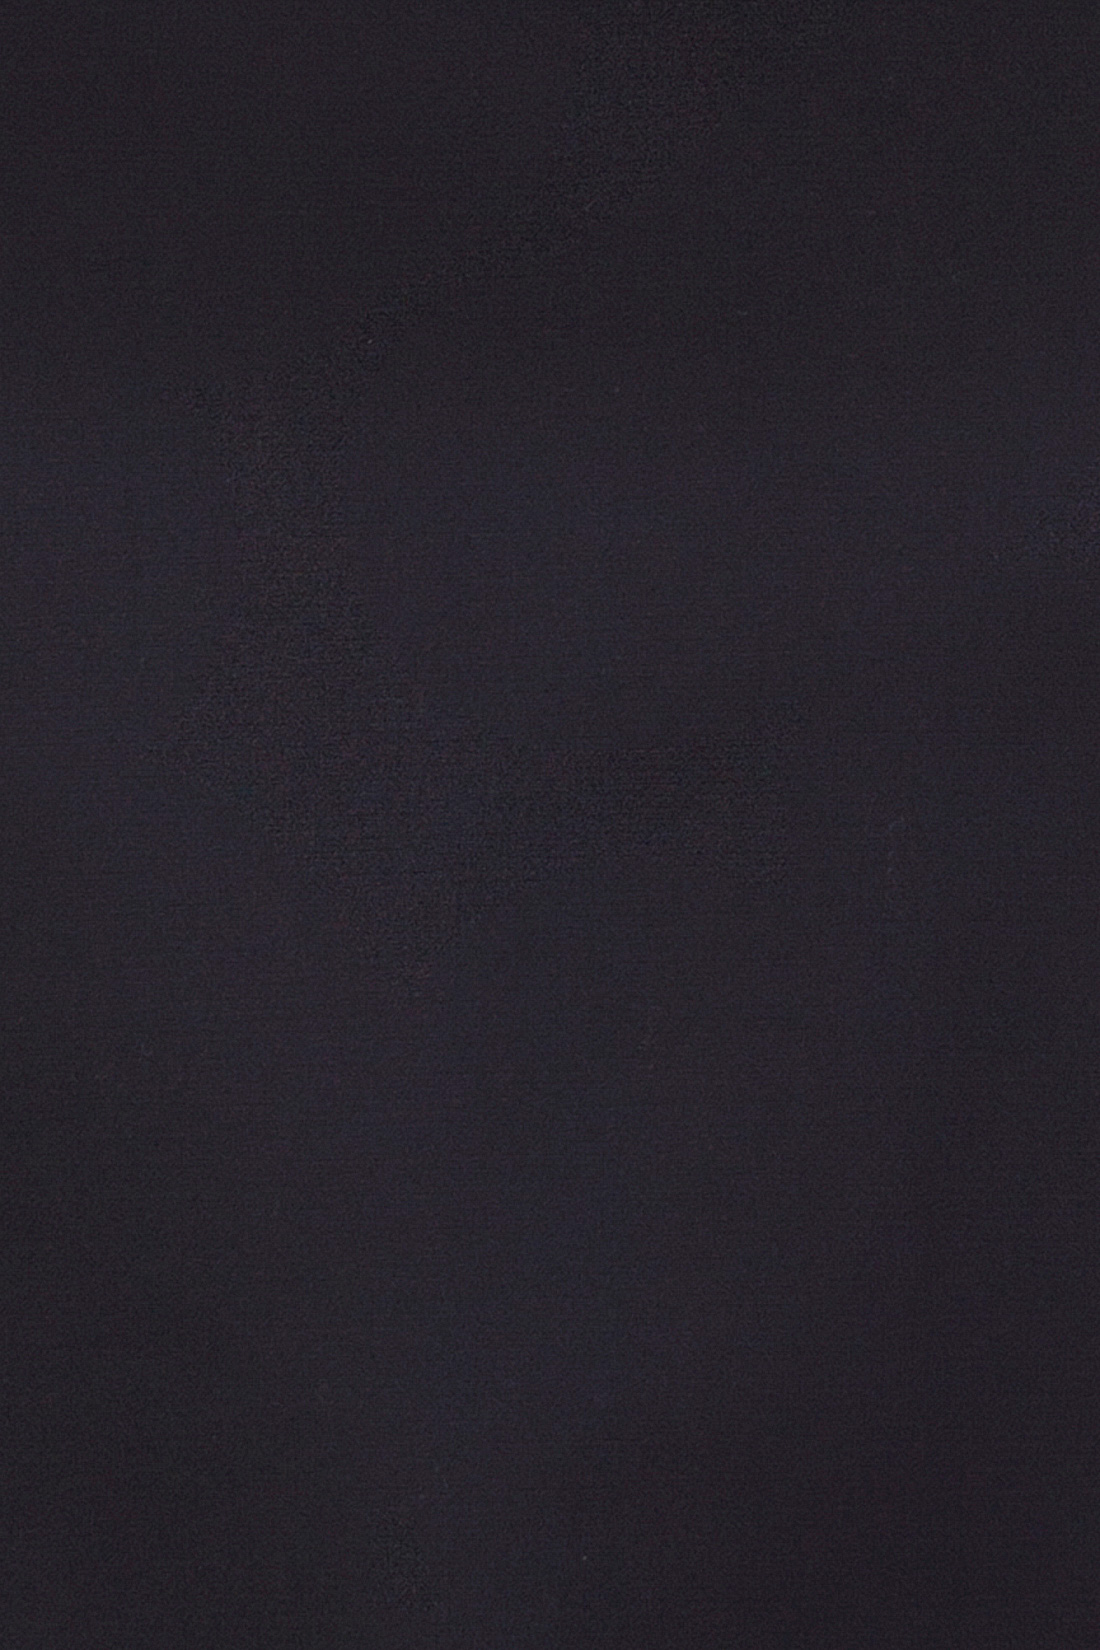 Блузка с молнией на спине (арт. baon B197031), размер L, цвет черный Блузка с молнией на спине (арт. baon B197031) - фото 3